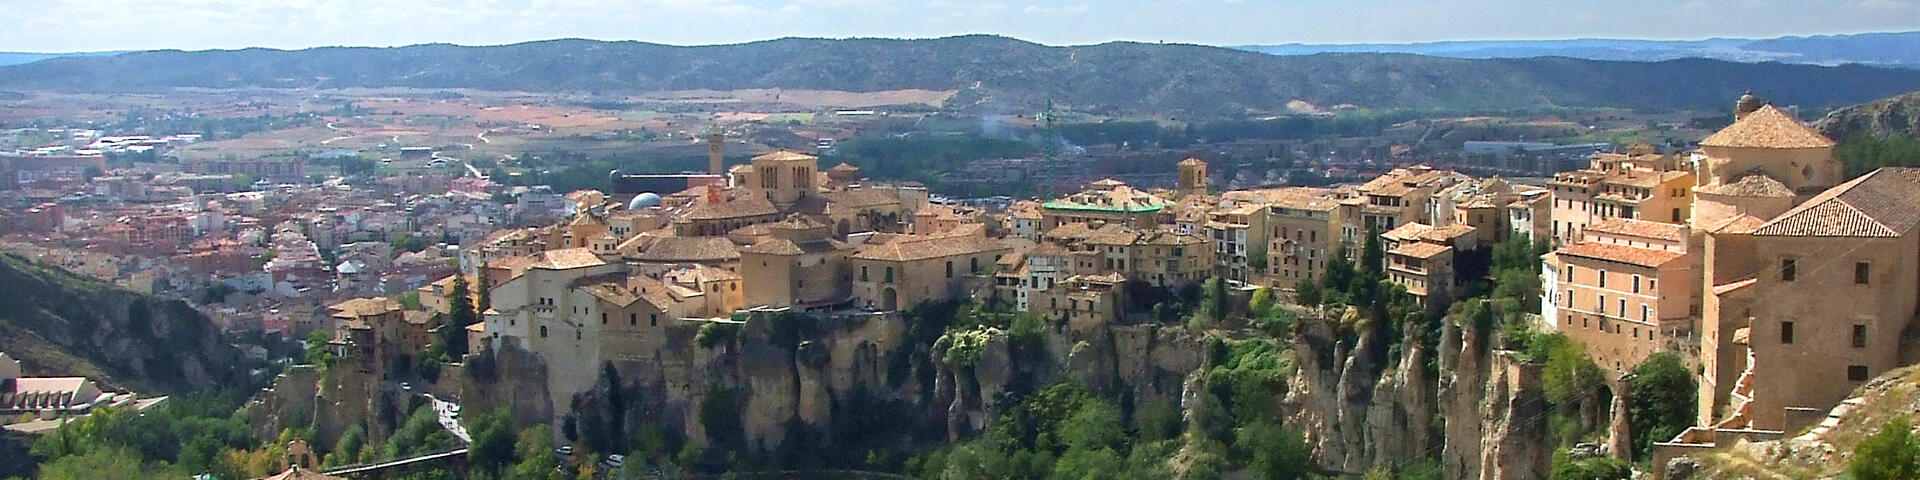 Cuenca, Castile La-Mancha